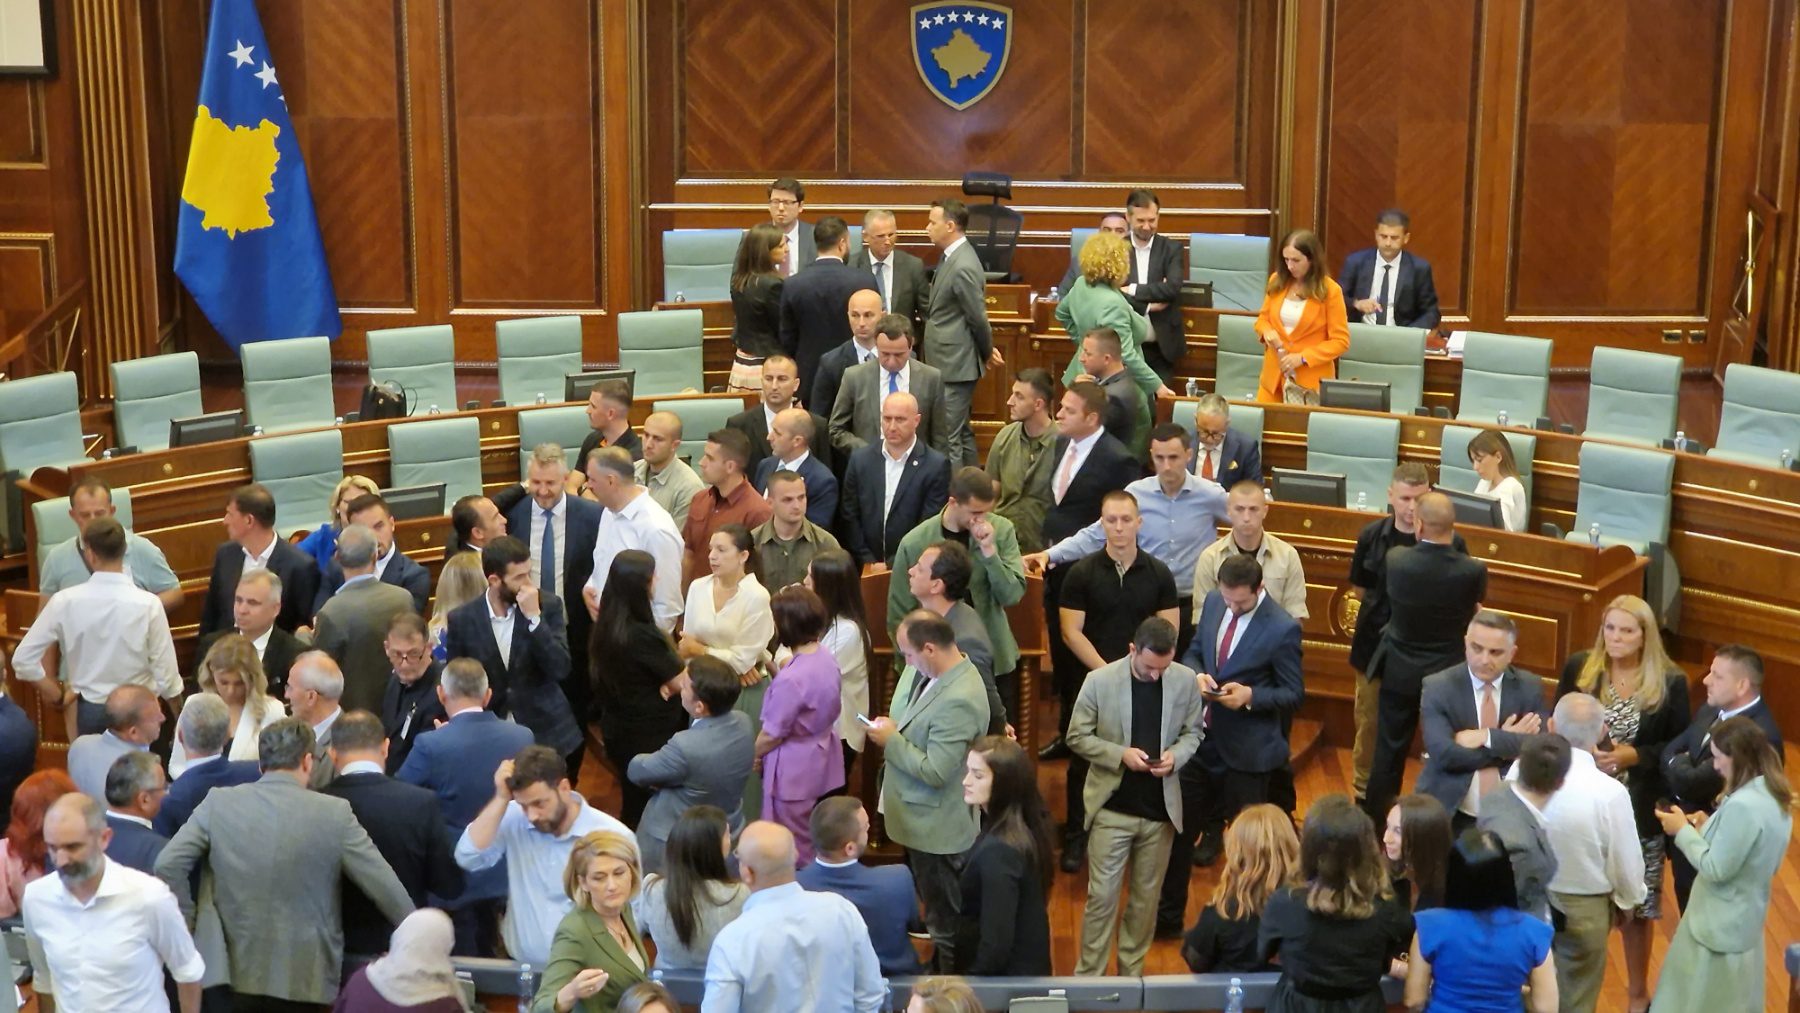 Nis procesi gjyqësor për ‘rrahjen e famshme’ në Kuvendin e Kosovës